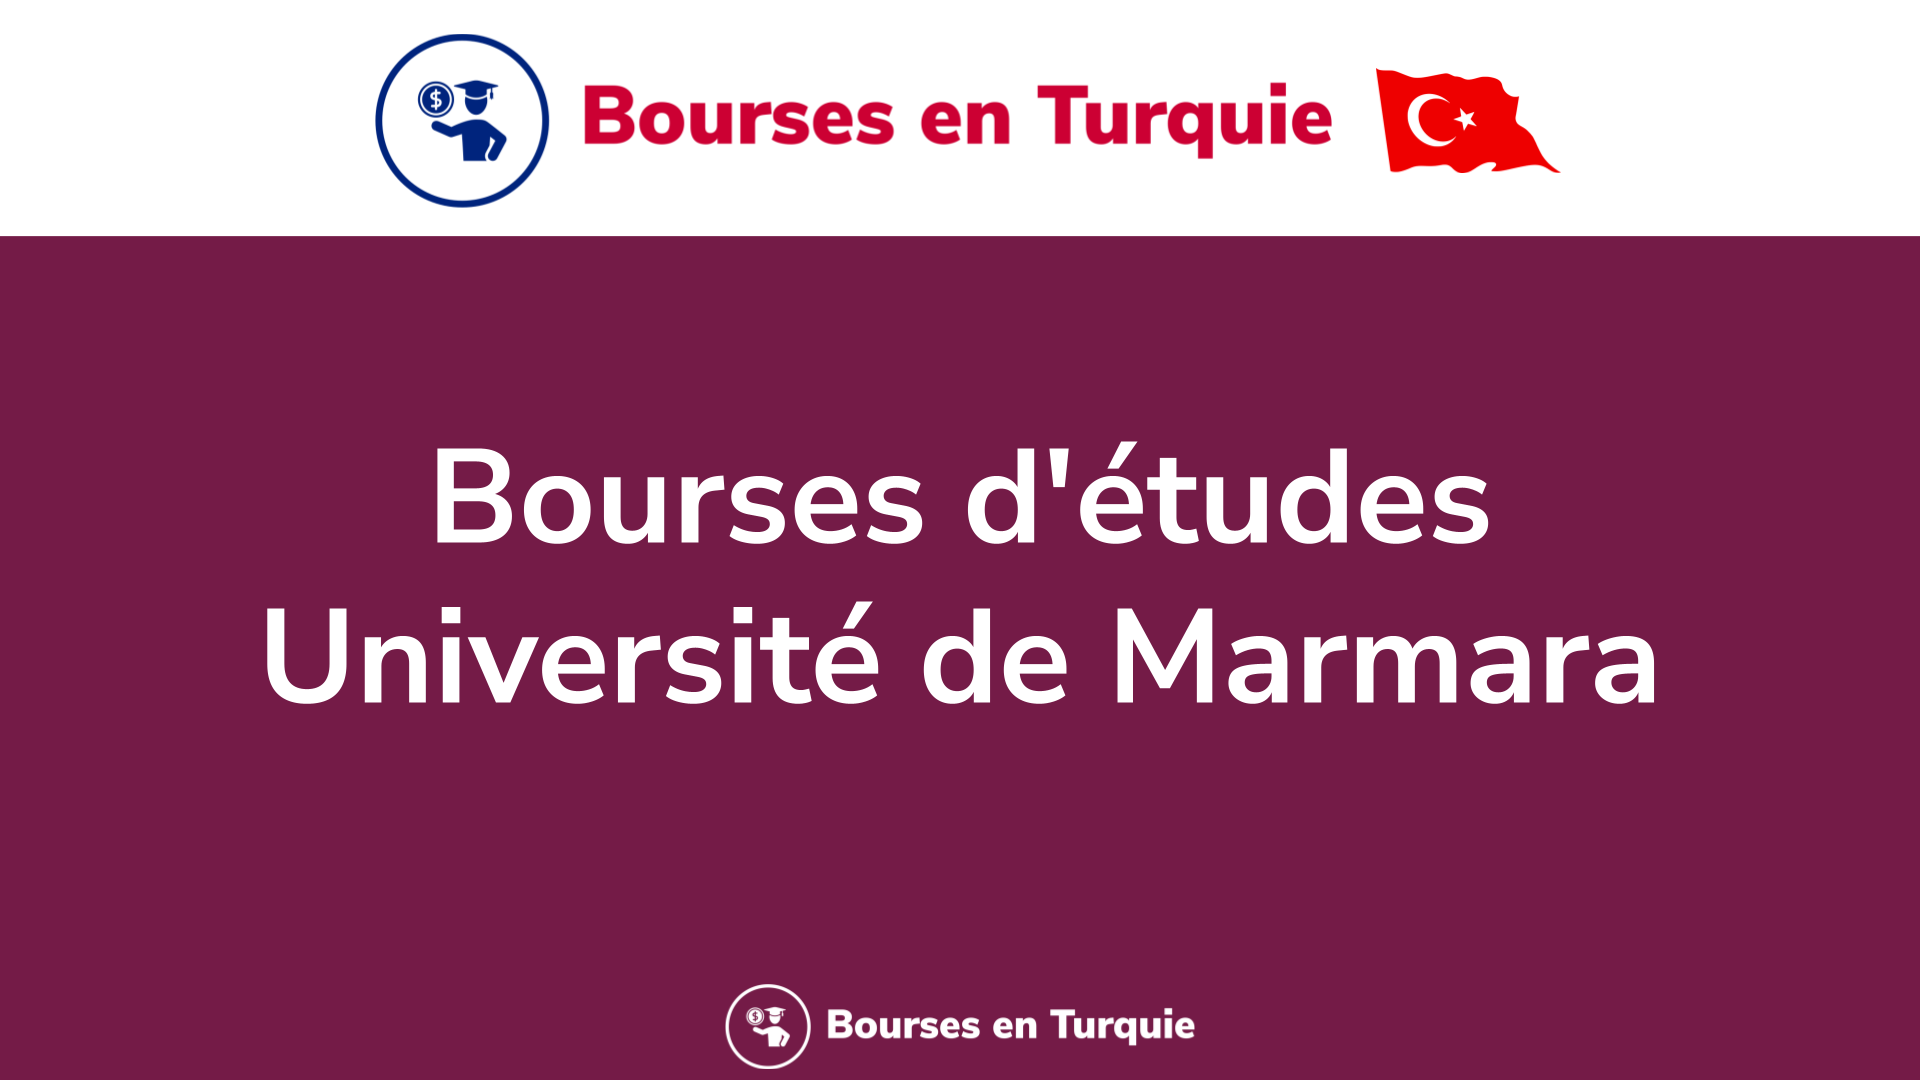 Bourses d’études Université de Marmara